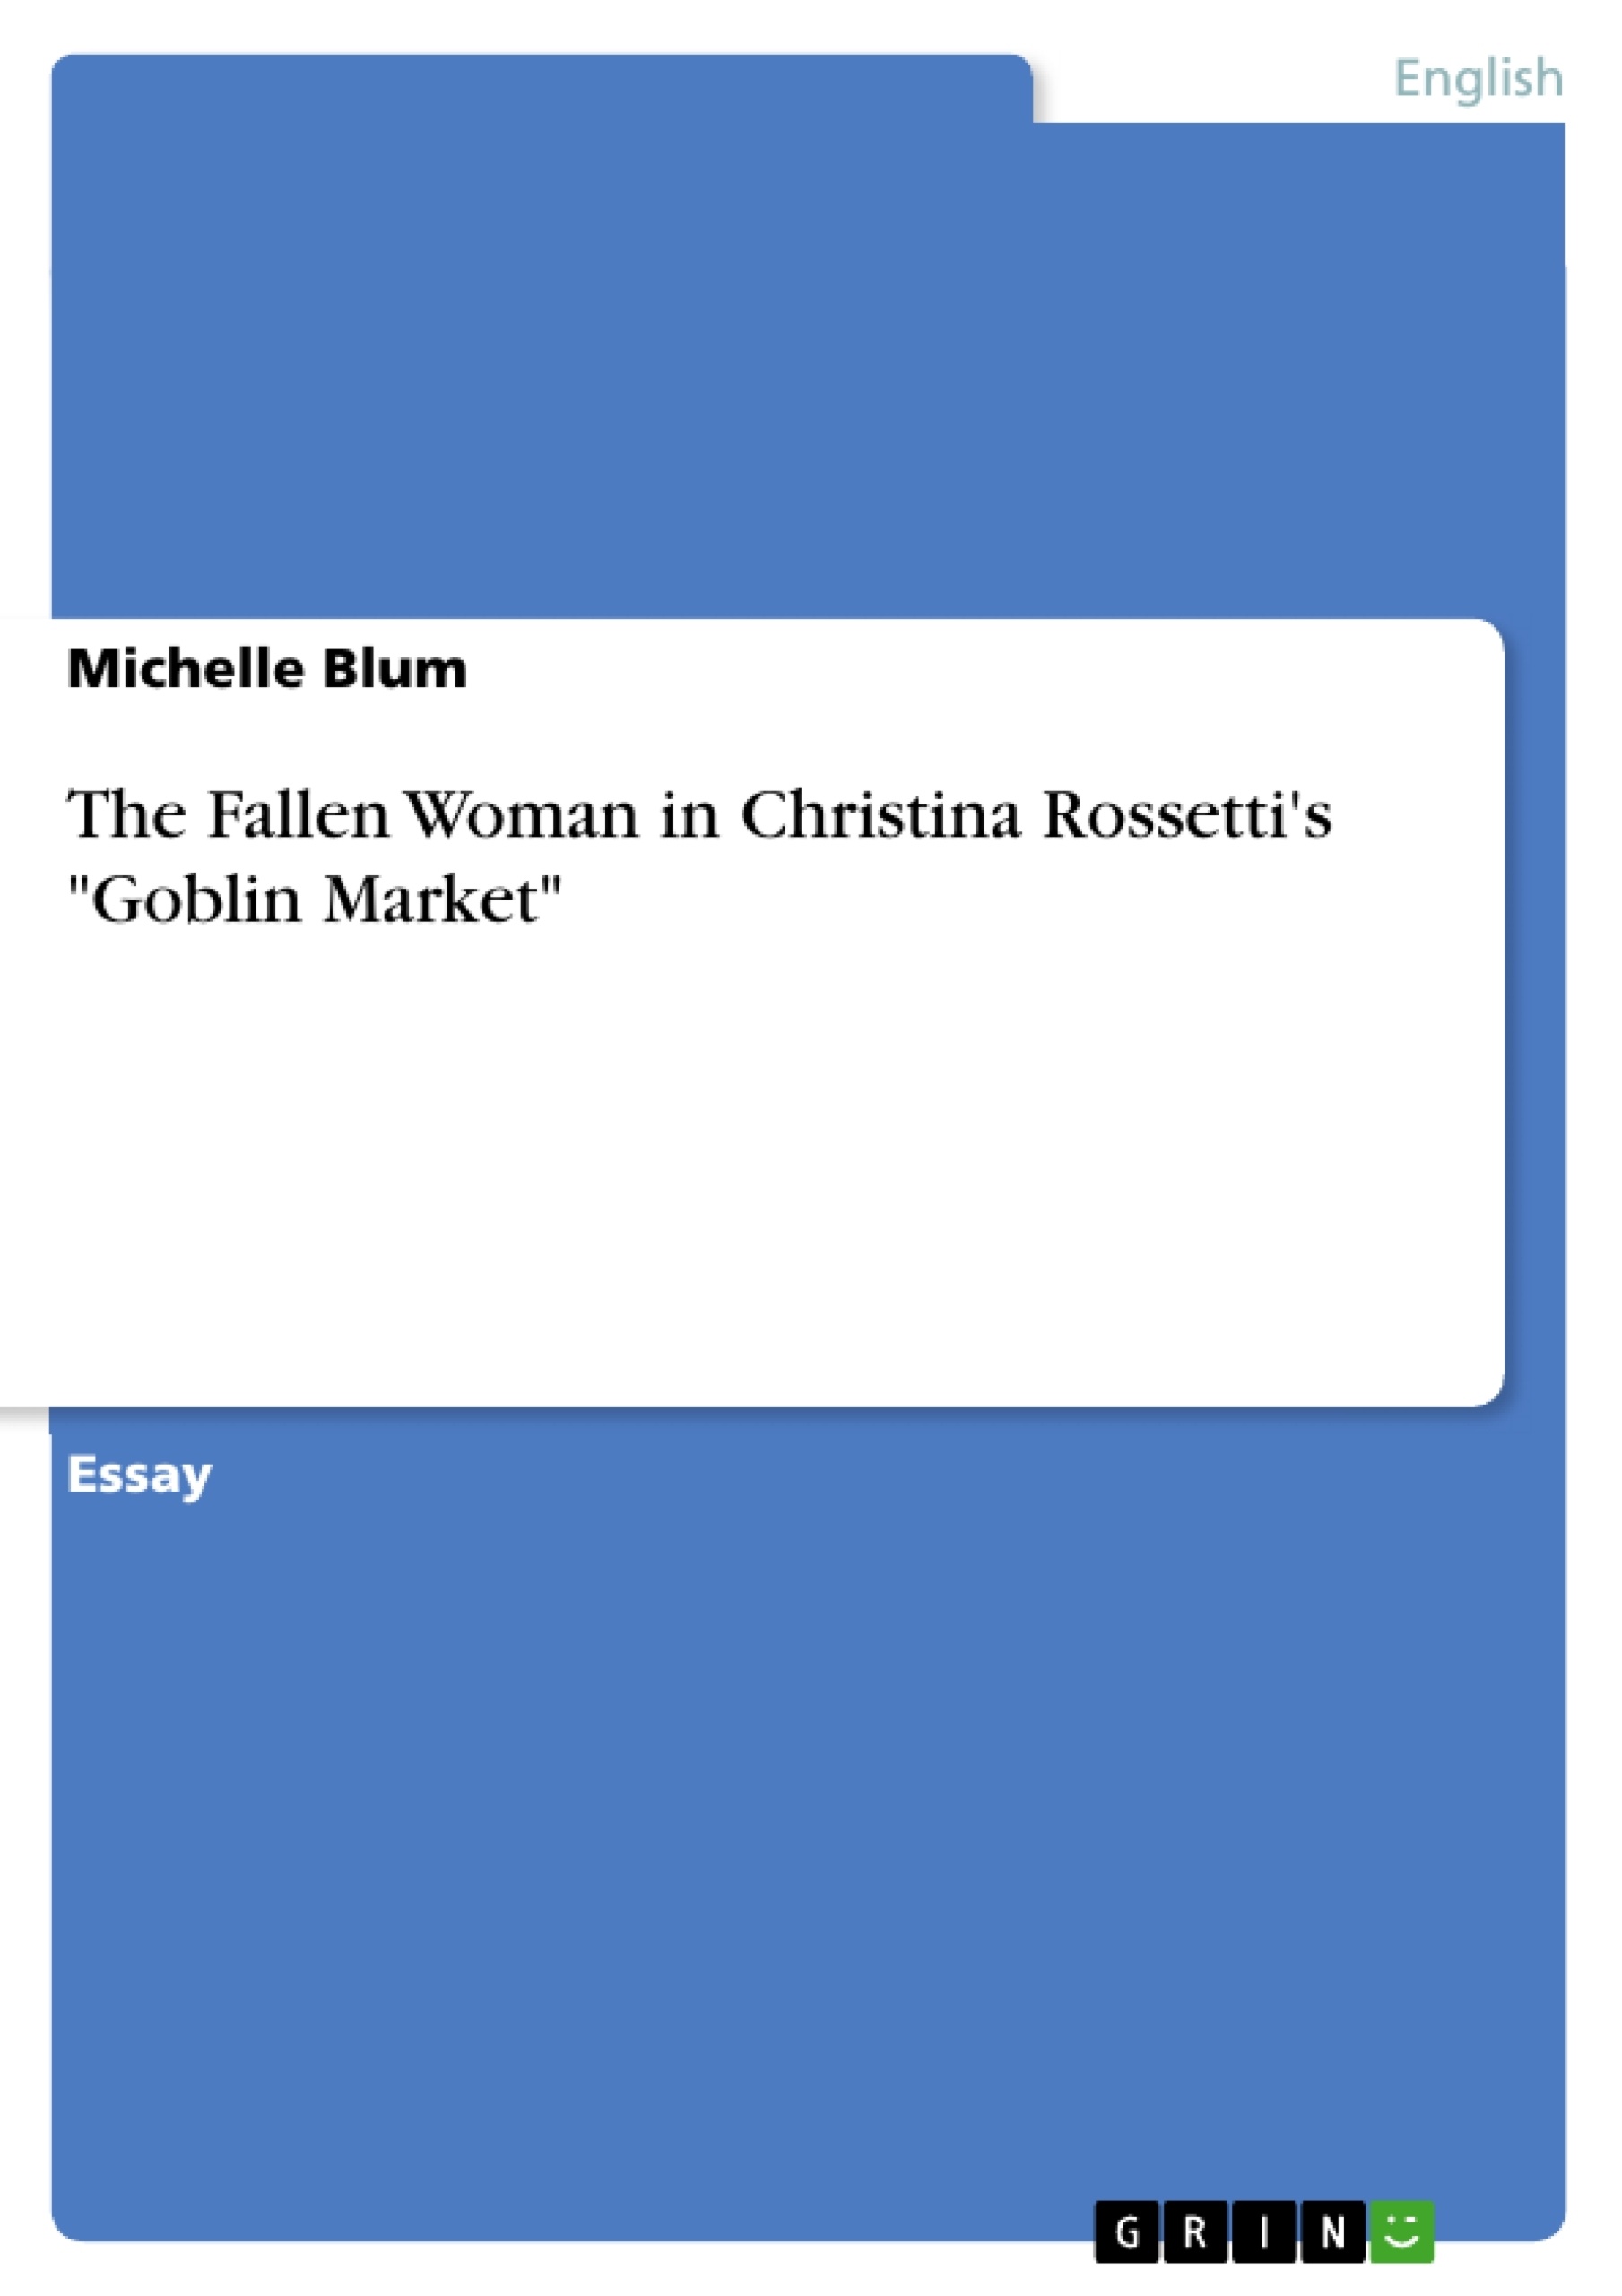 Title: The Fallen Woman in Christina Rossetti's "Goblin Market"